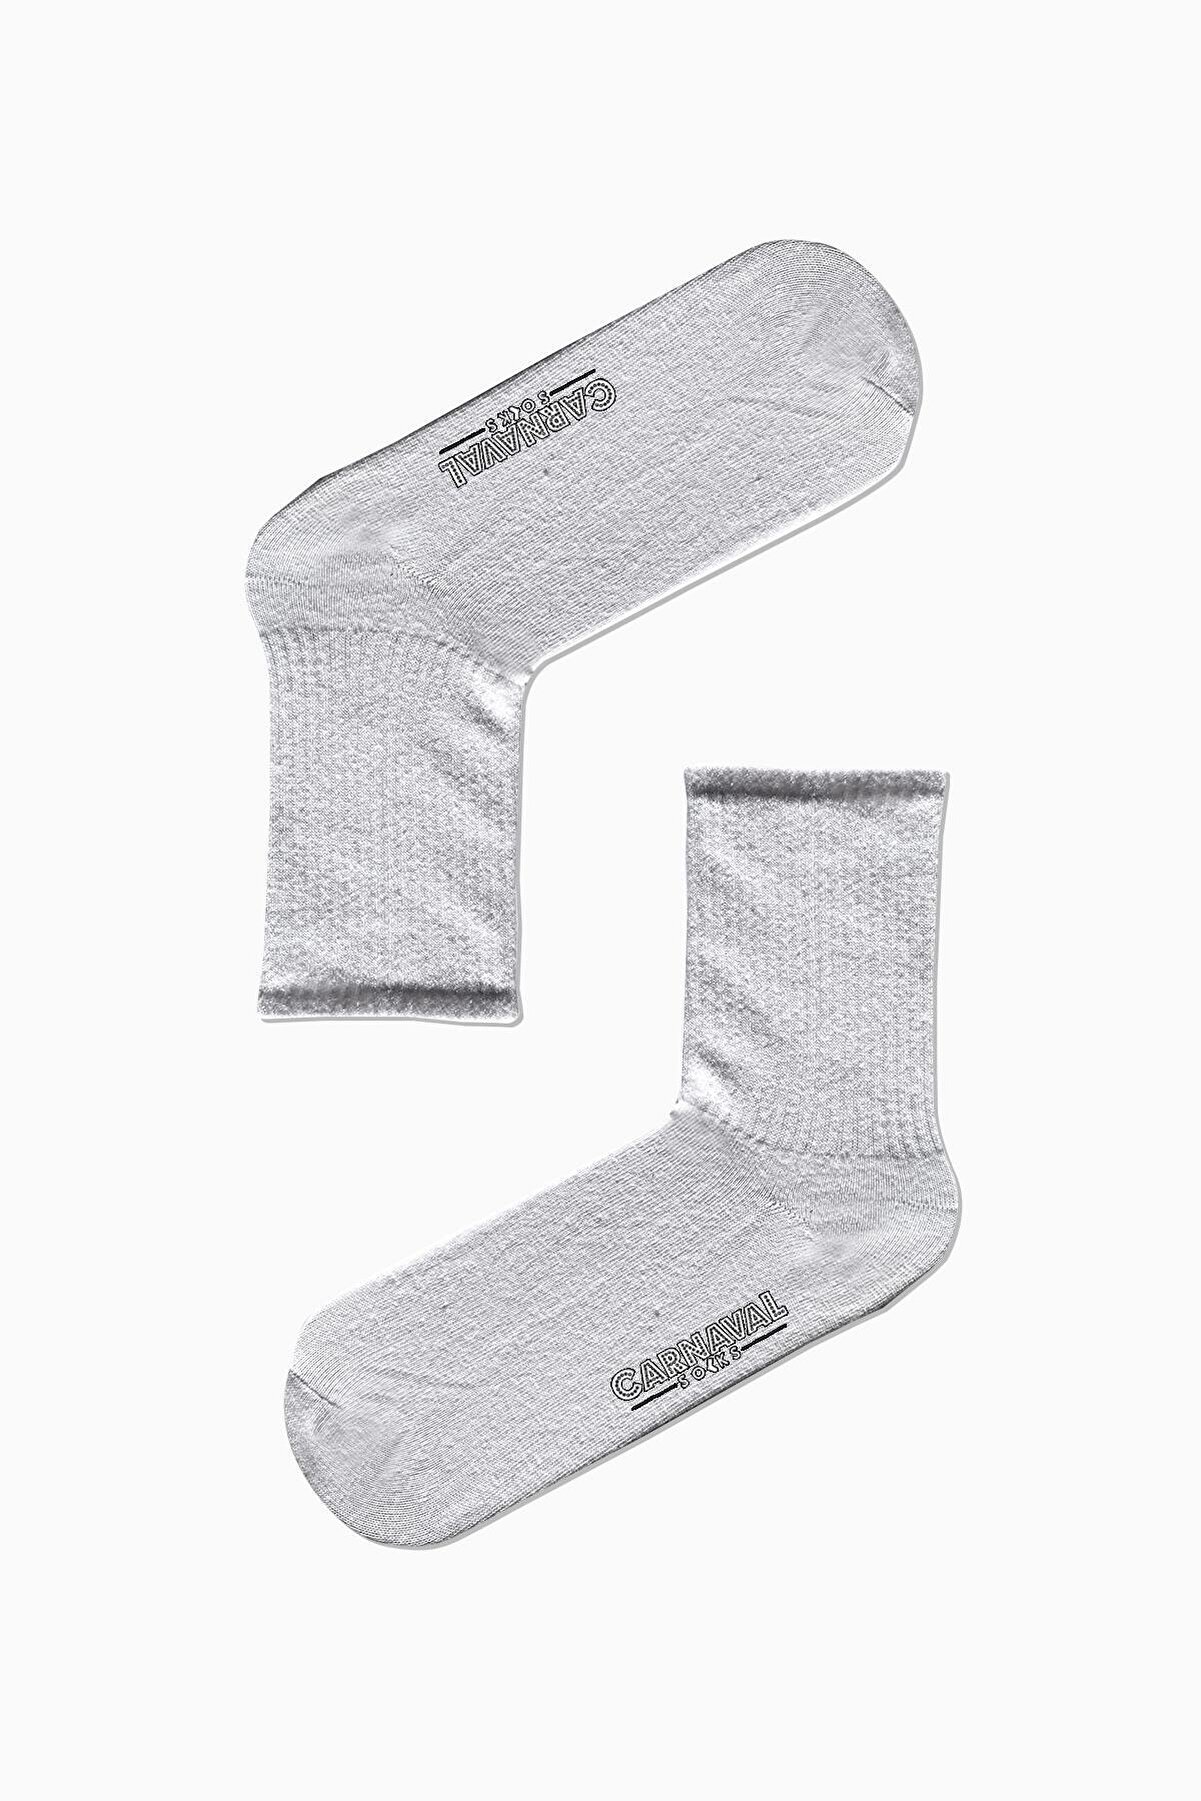 CARNAVAL SOCKS Düz Beyaz Desensiz Renkli Spor Çorap